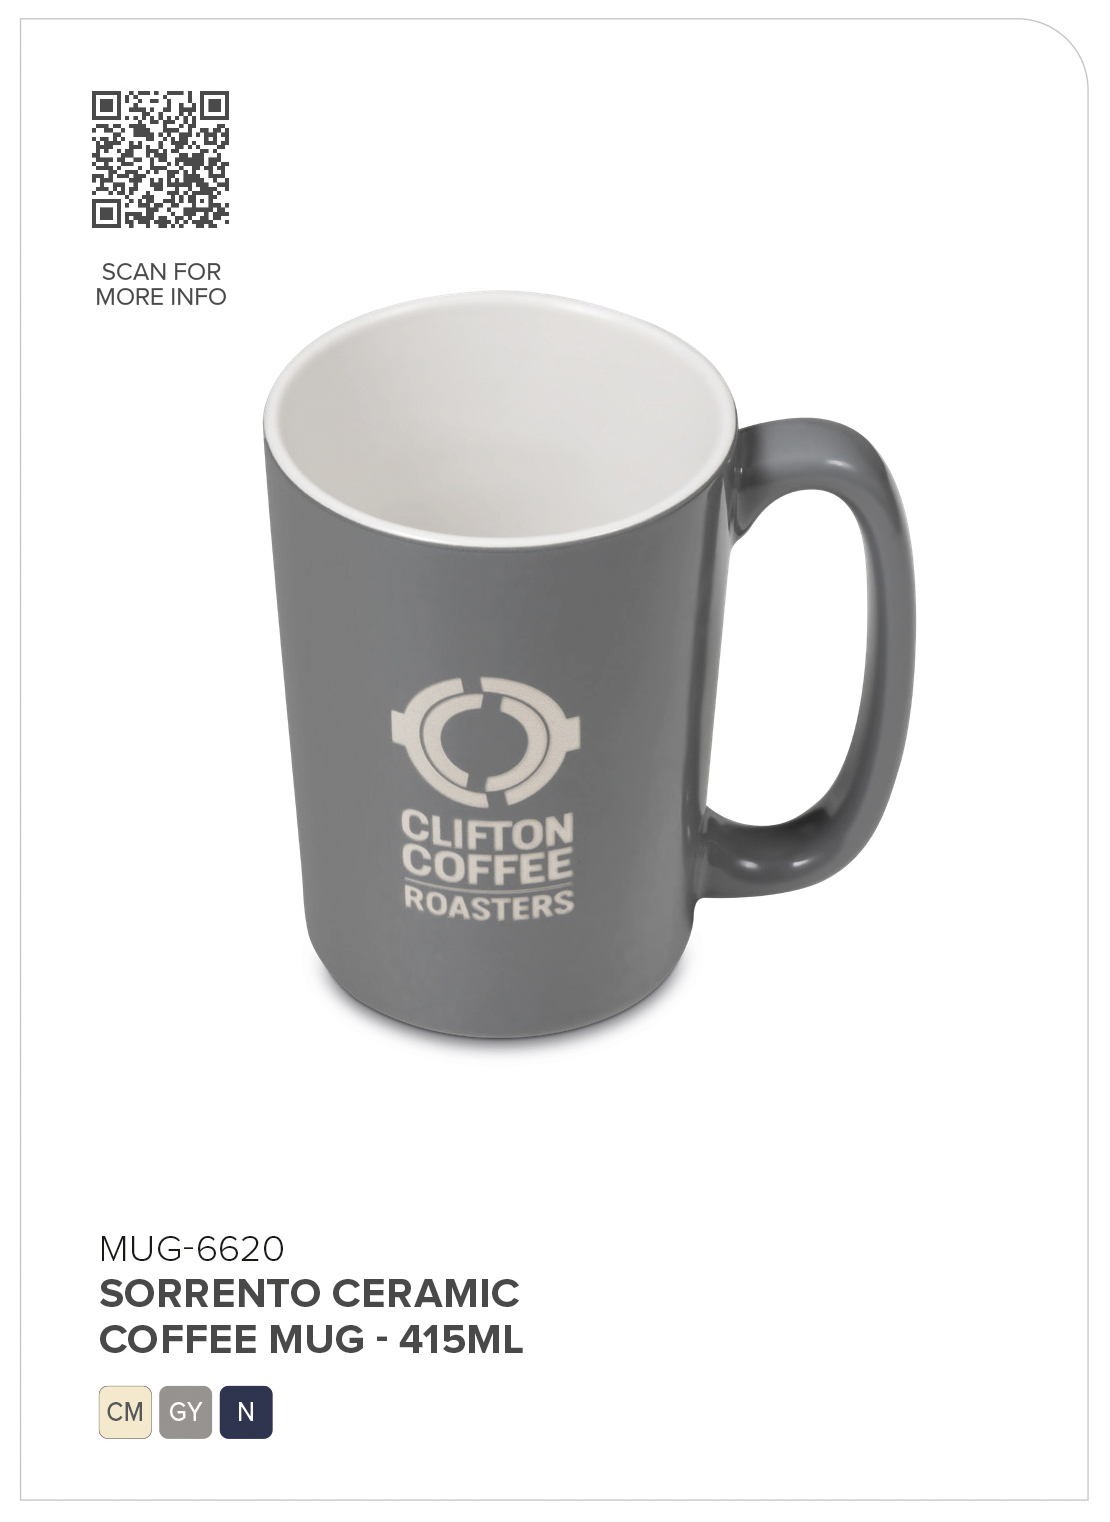 Sorrento Ceramic Coffee Mug - 415ml CATALOGUE_IMAGE